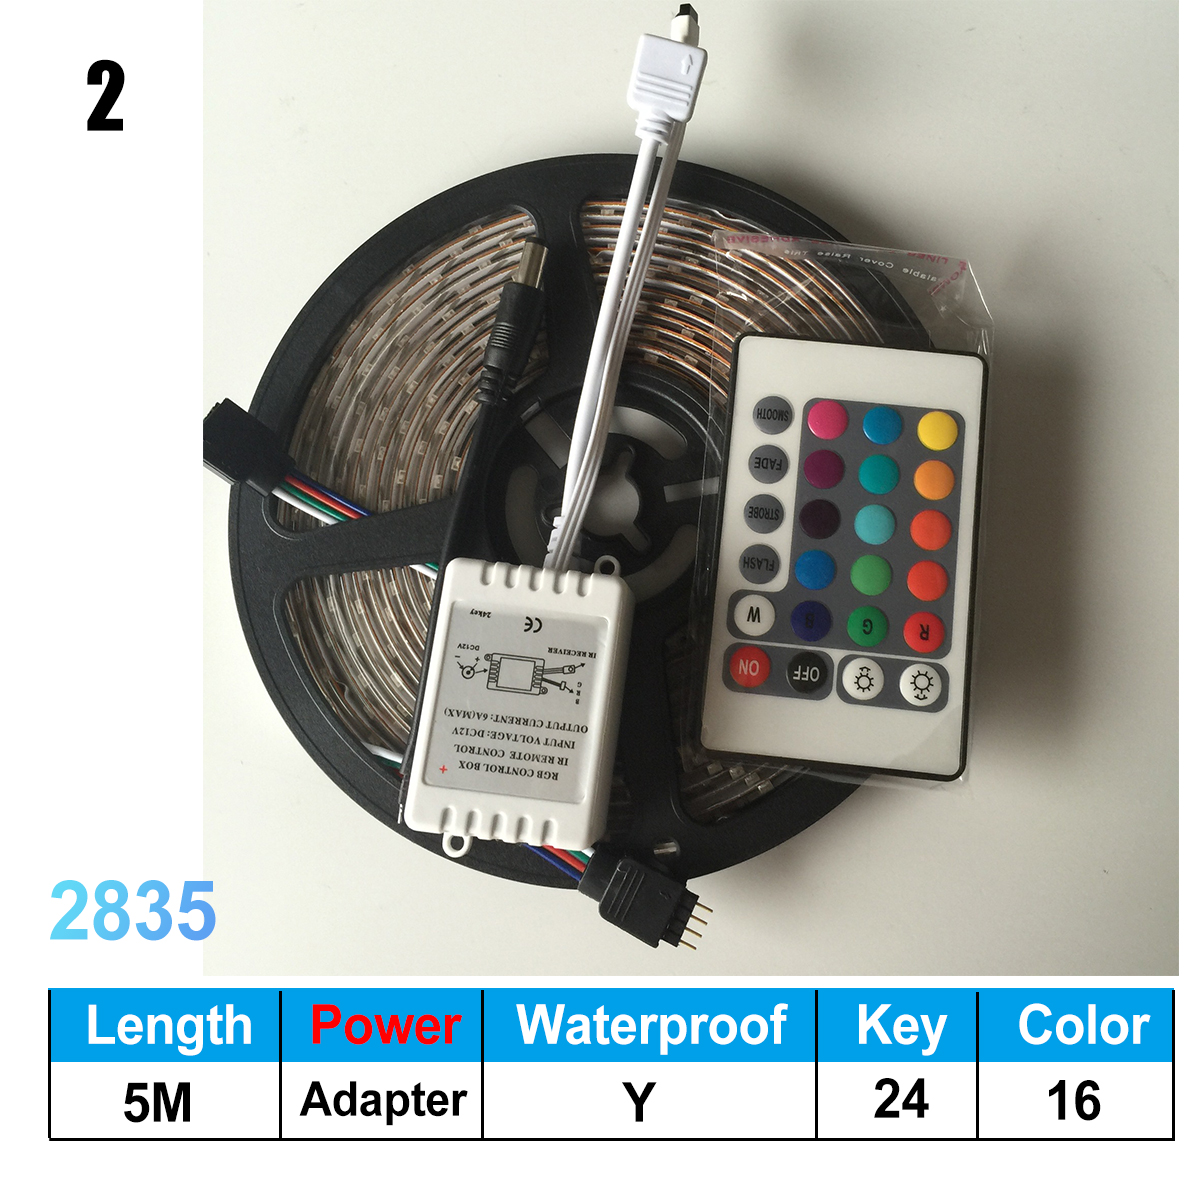 5M-IP20-IP67-SMD2835-RGB-LED-Strip-Light-DC12V--24Keys-Or-44Keys-Remote-Control-for-Indoor-Home-Deco-1622617-5